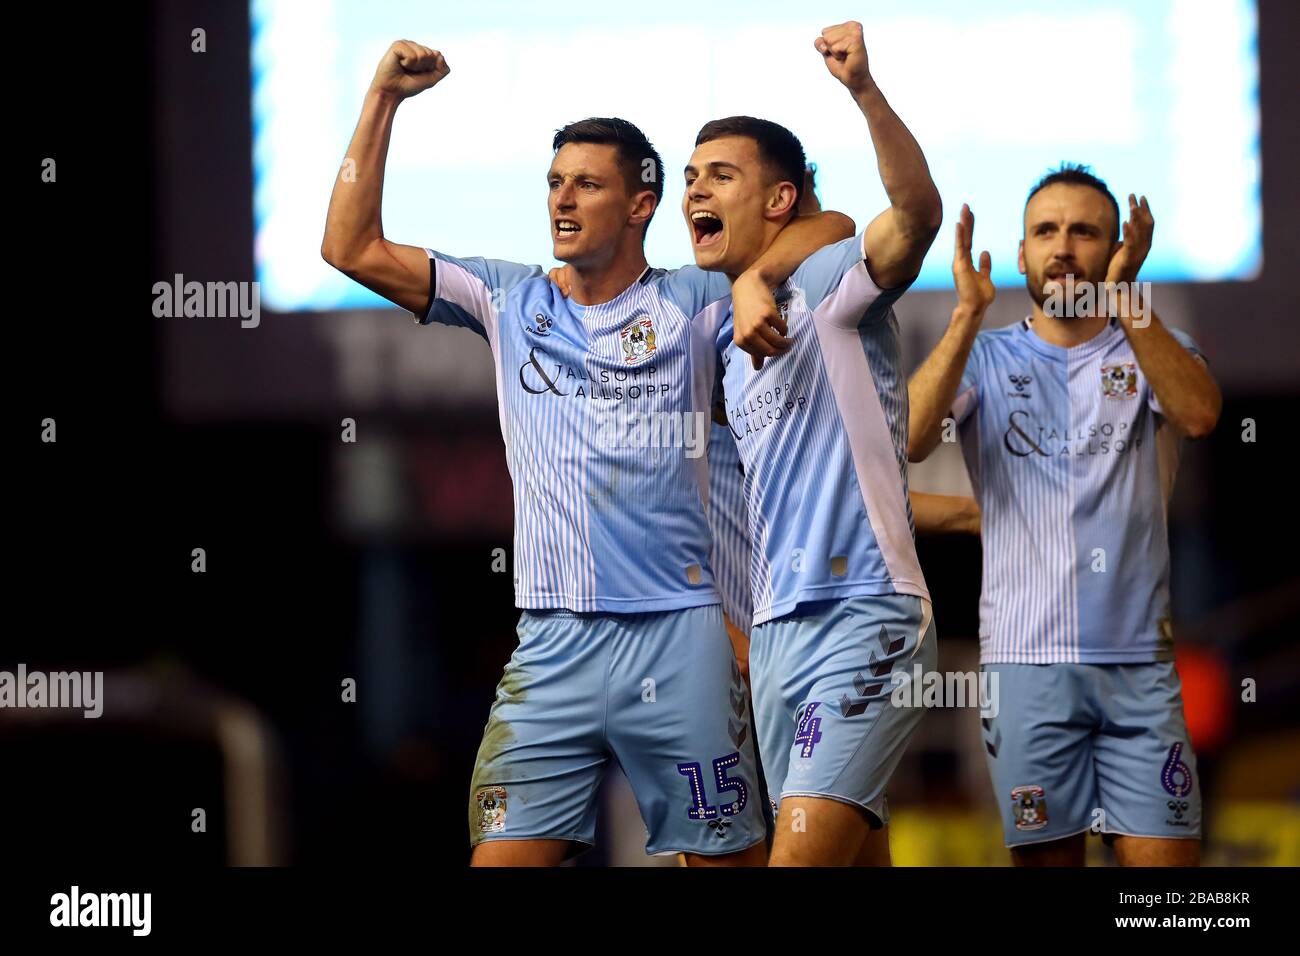 Les Dominic Hyam, Michael Rose et Liam Kelly de Coventry City (à gauche) célèbrent après le coup de sifflet final Banque D'Images